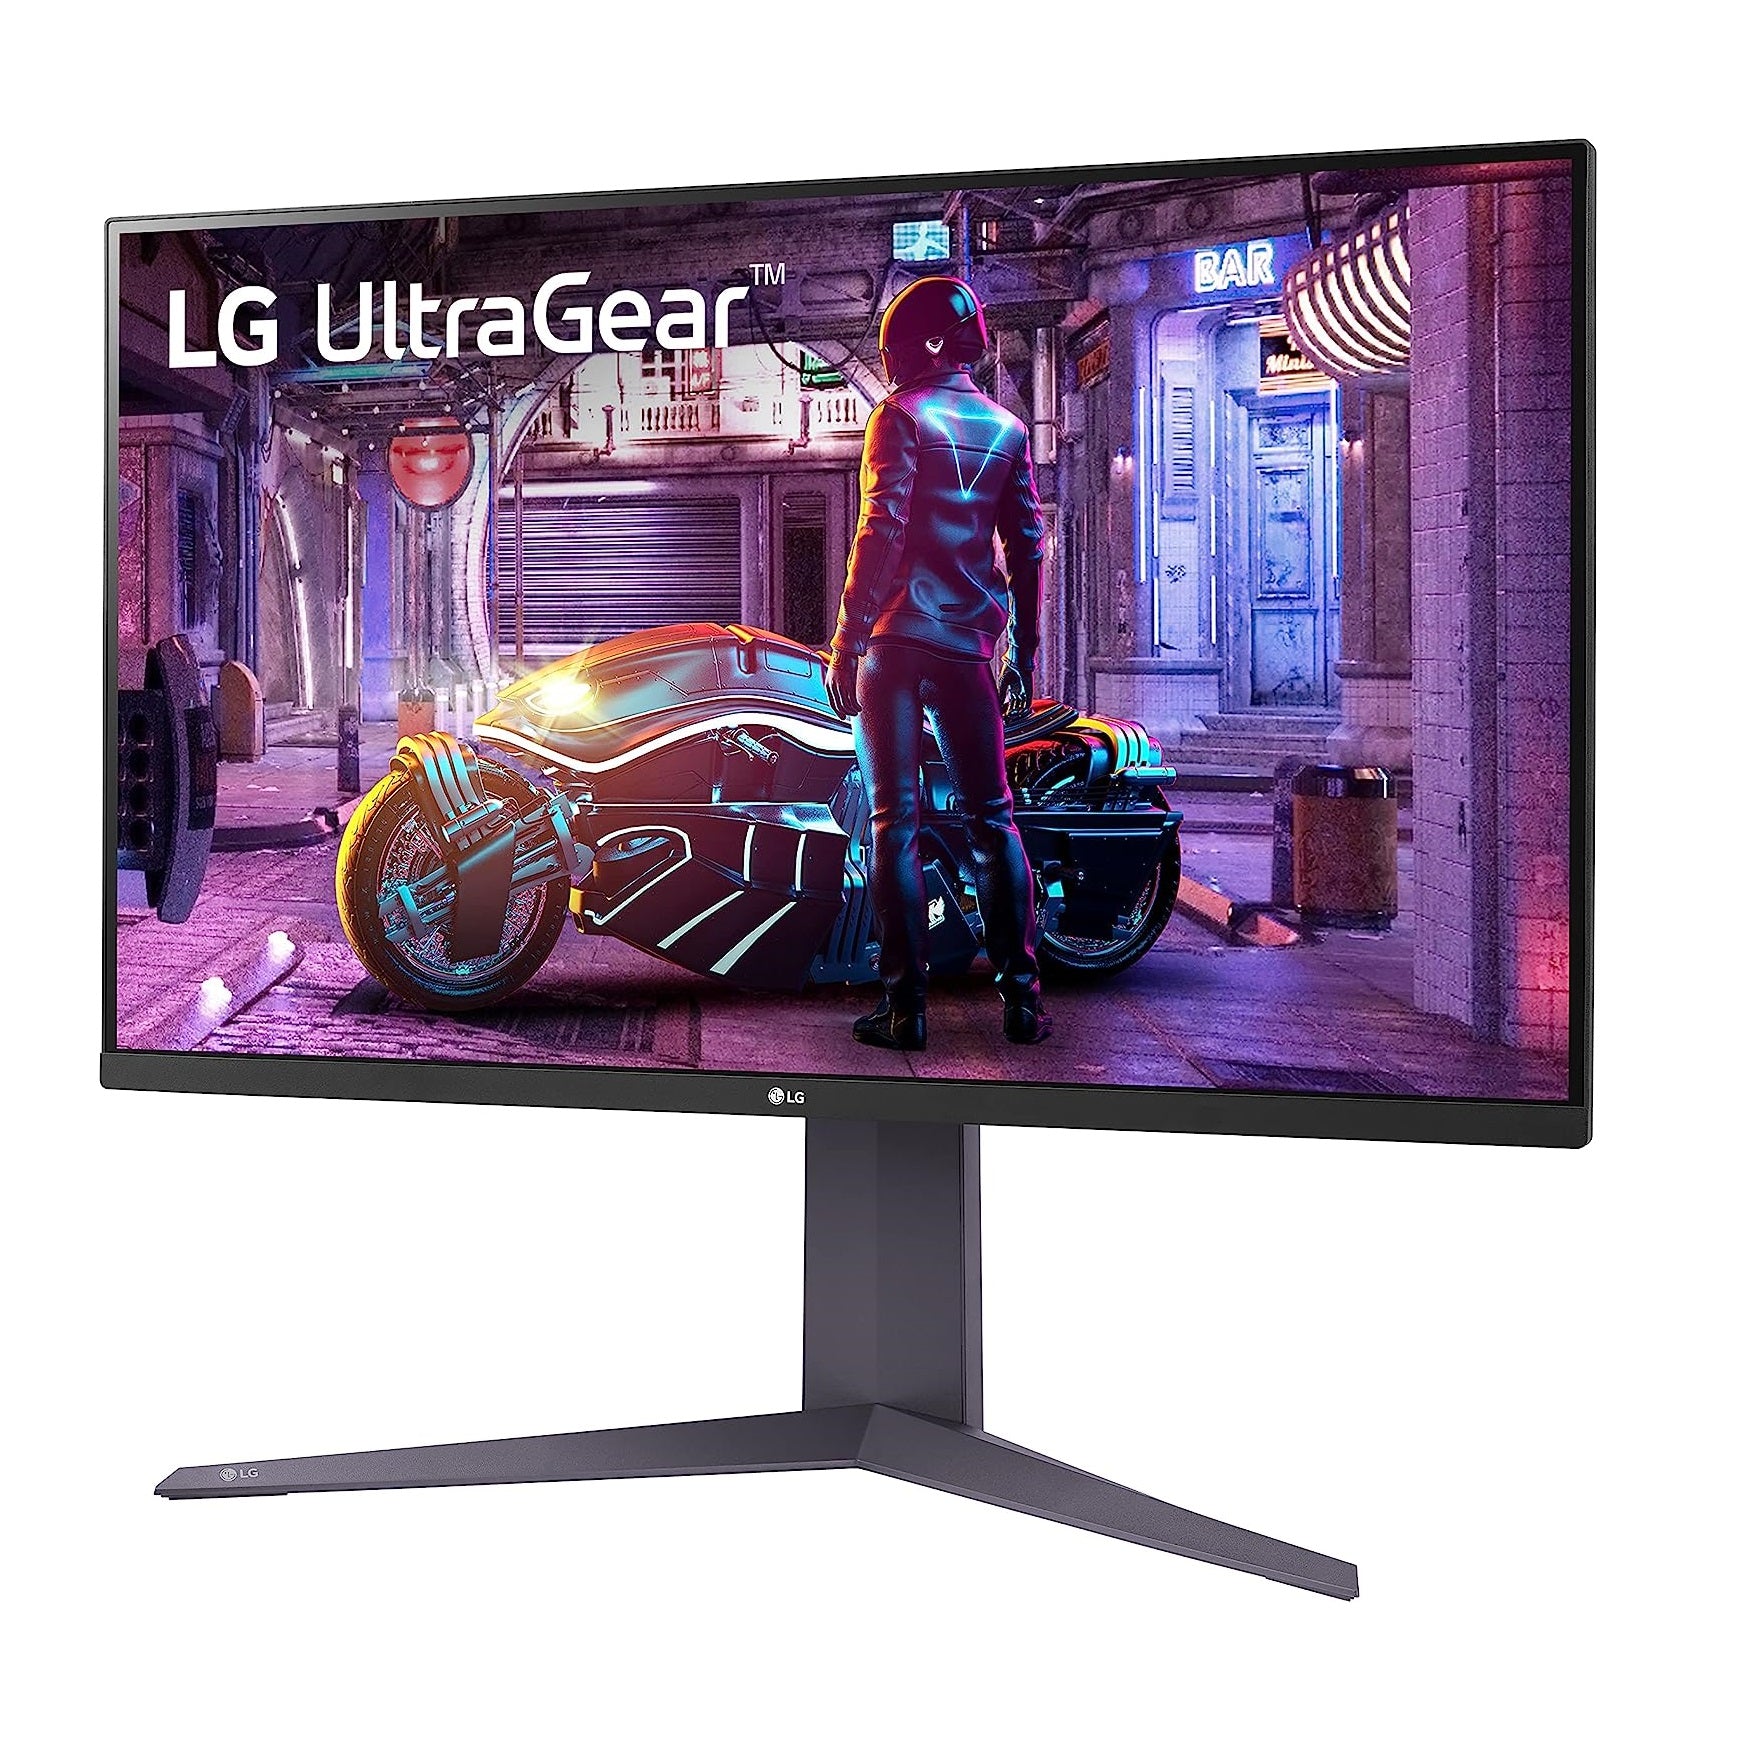 ال جي (32GQ750-B) شاشة الألعاب UltraGear™‎ بدقة UHD 4K، مقاس 31.5 بوصة بتقنية HDR10